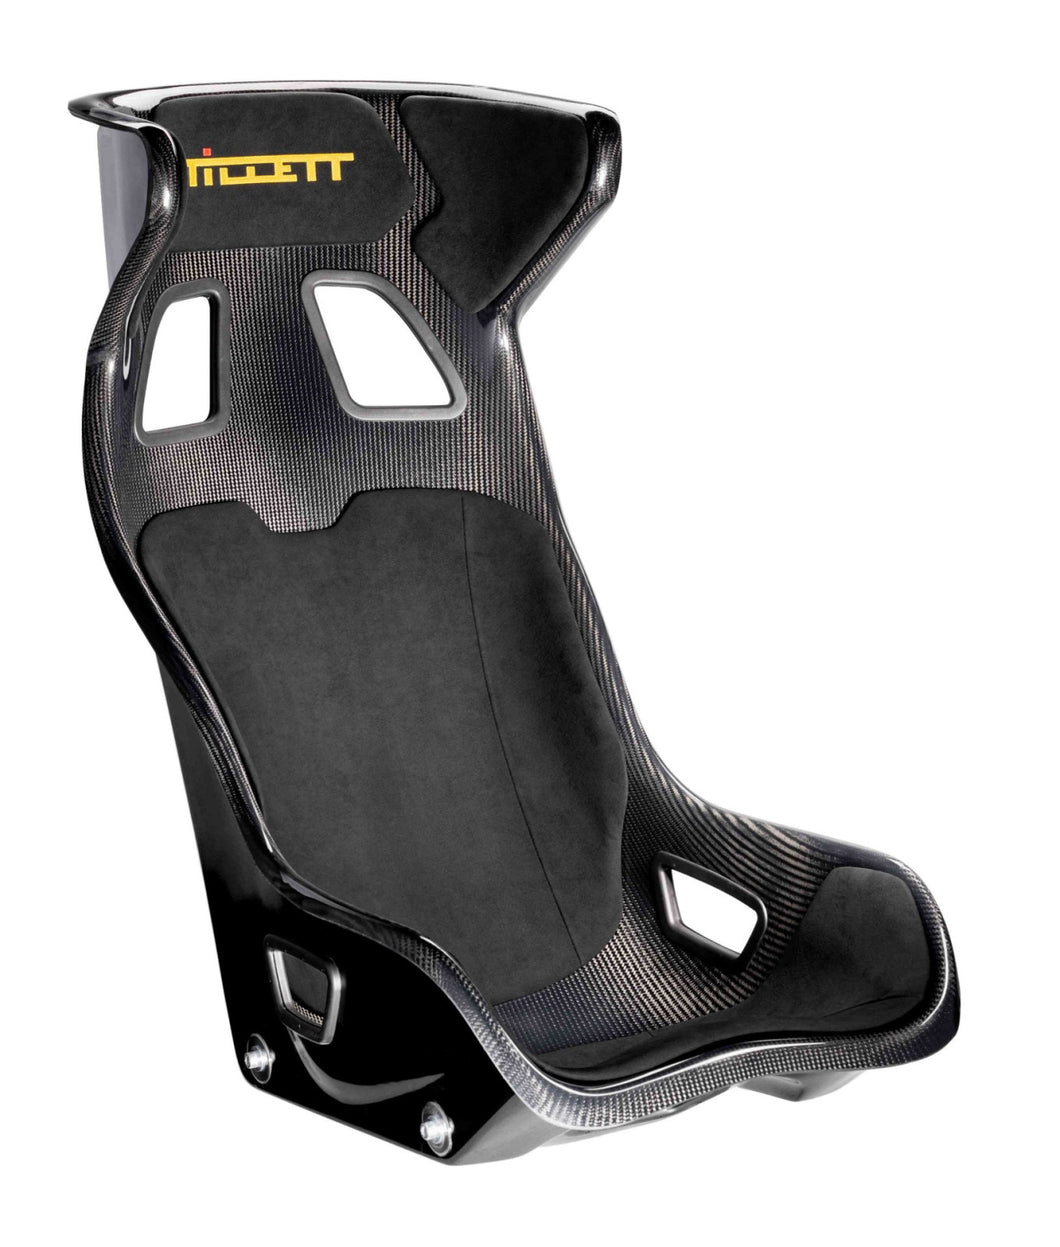 Tillett C1 Carbon GRP Race Car Seat